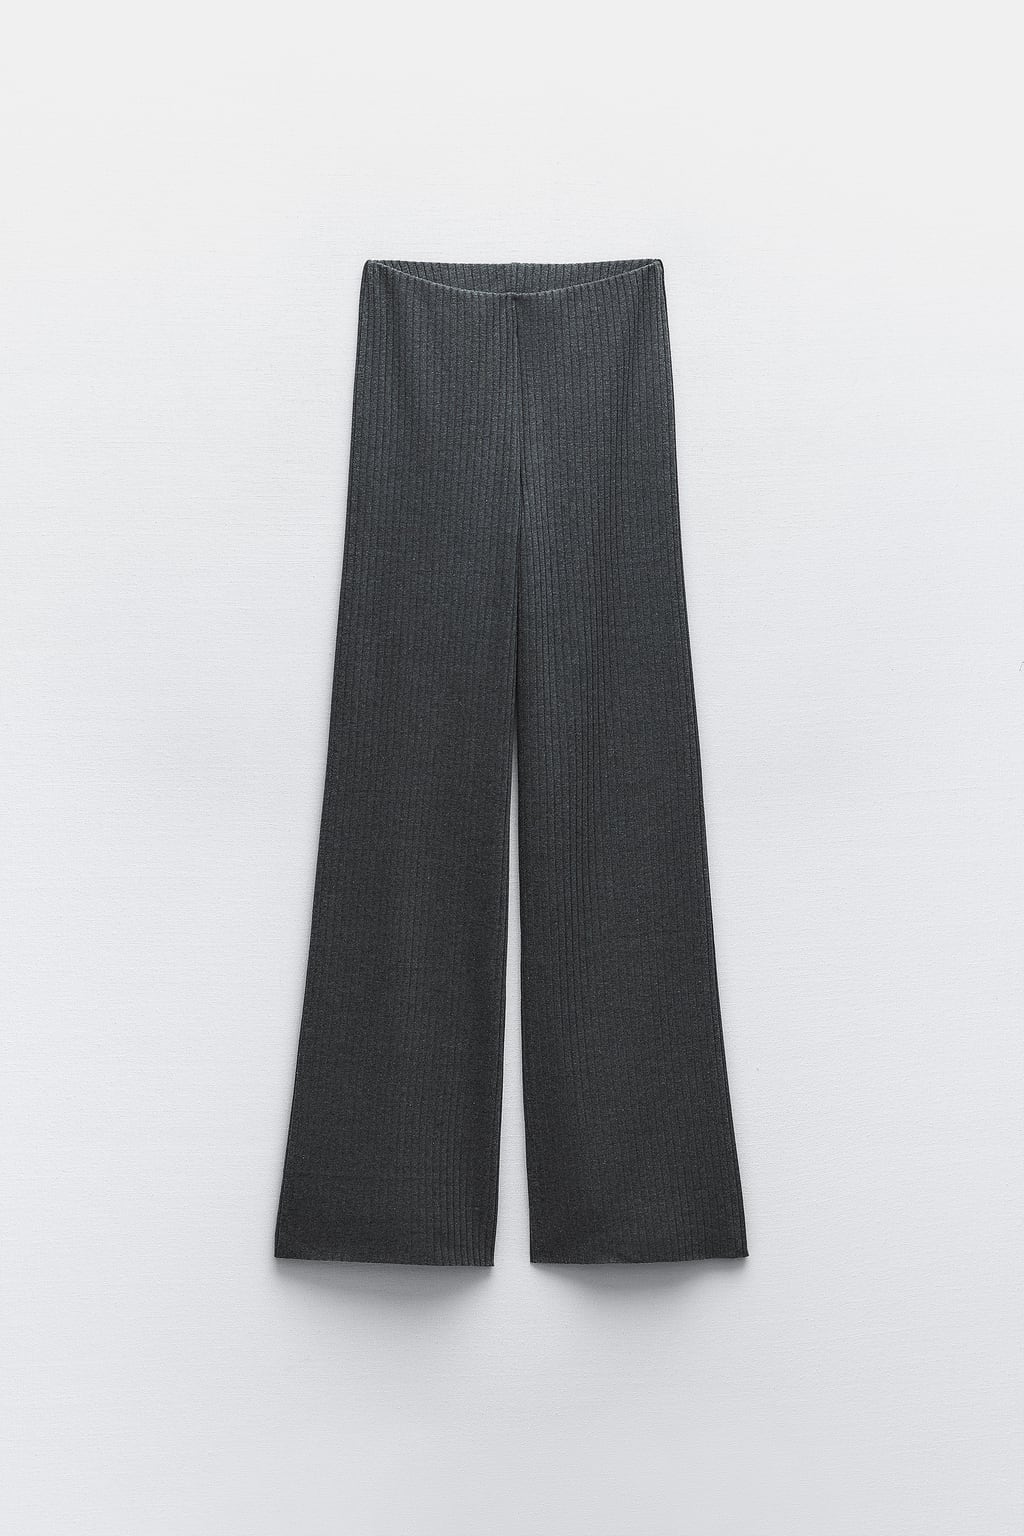 Широкие брюки в рубчик ZARA, серый мергель брюки женские хлопково льняные свободного кроя повседневные штаны с завышенной талией и широкими штанинами модные брюки оверсайз до щико